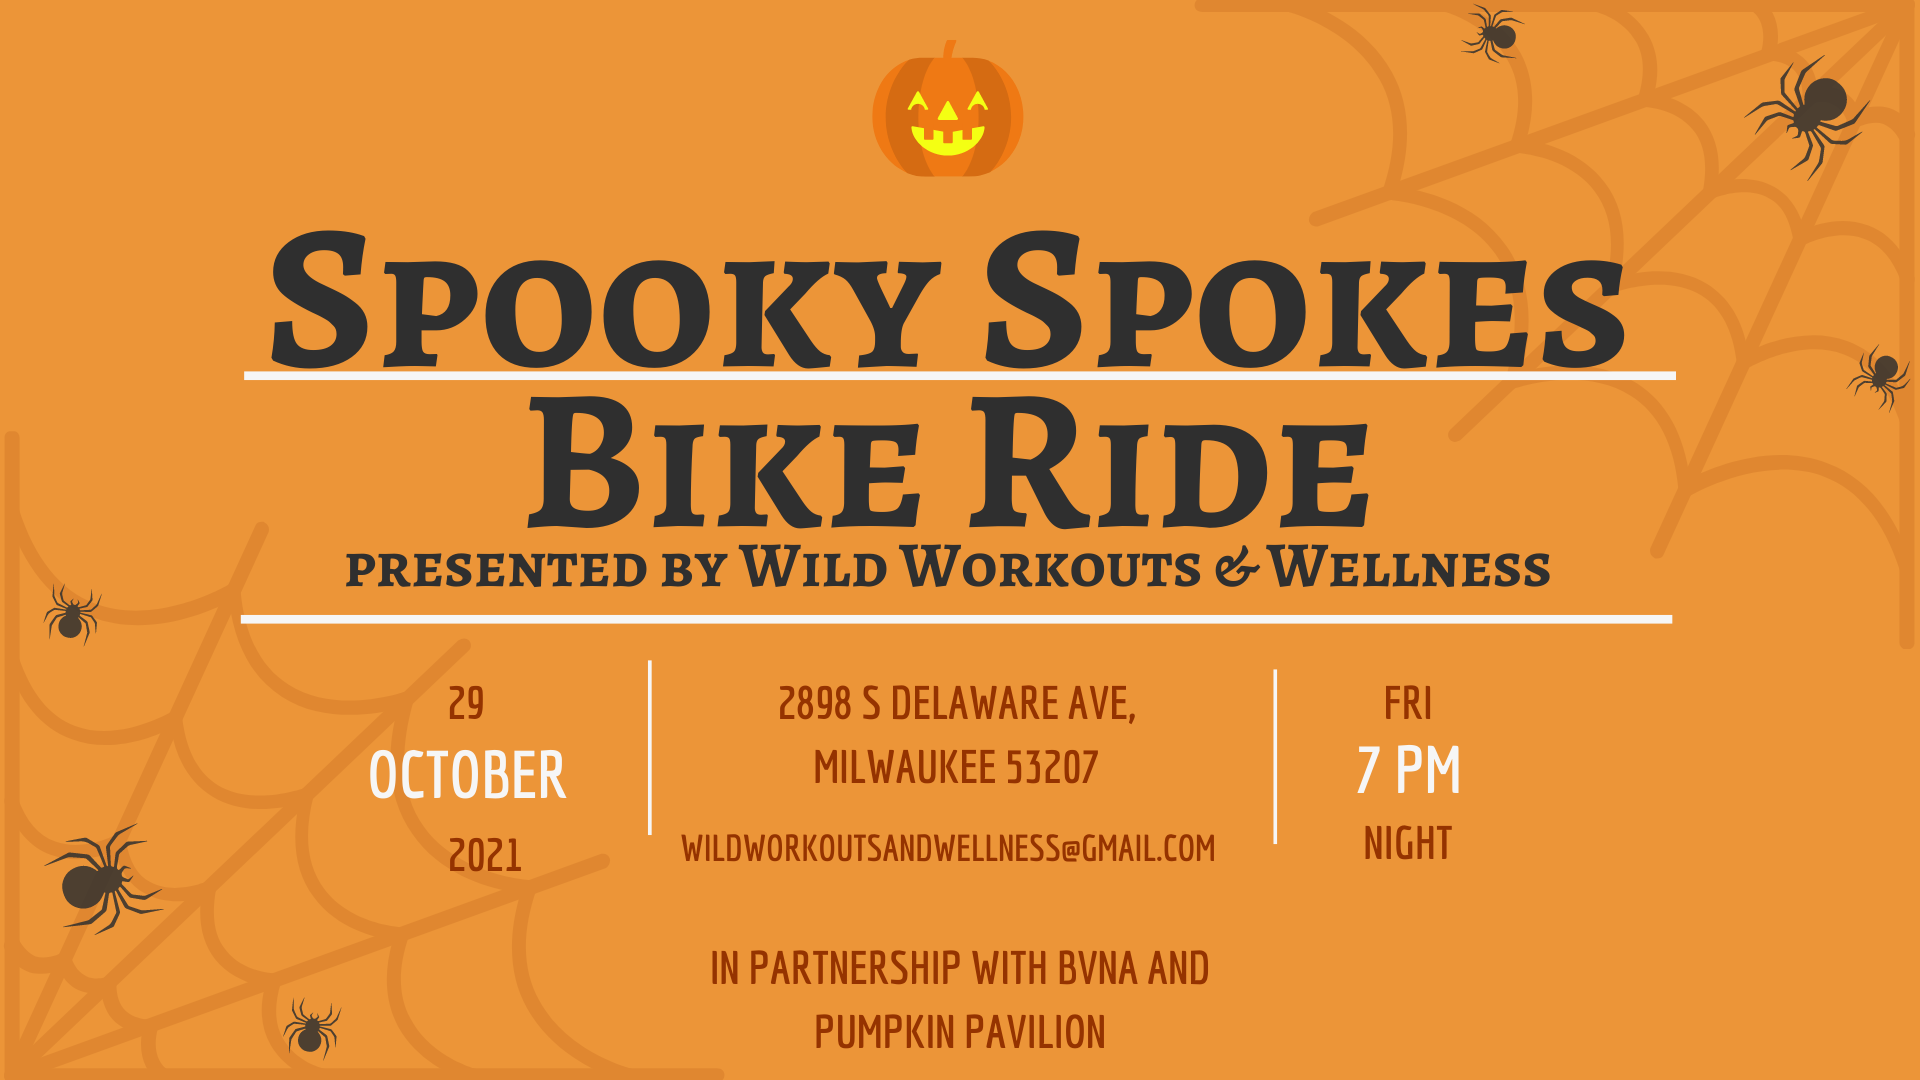 Spooky Spokes Bike Ride